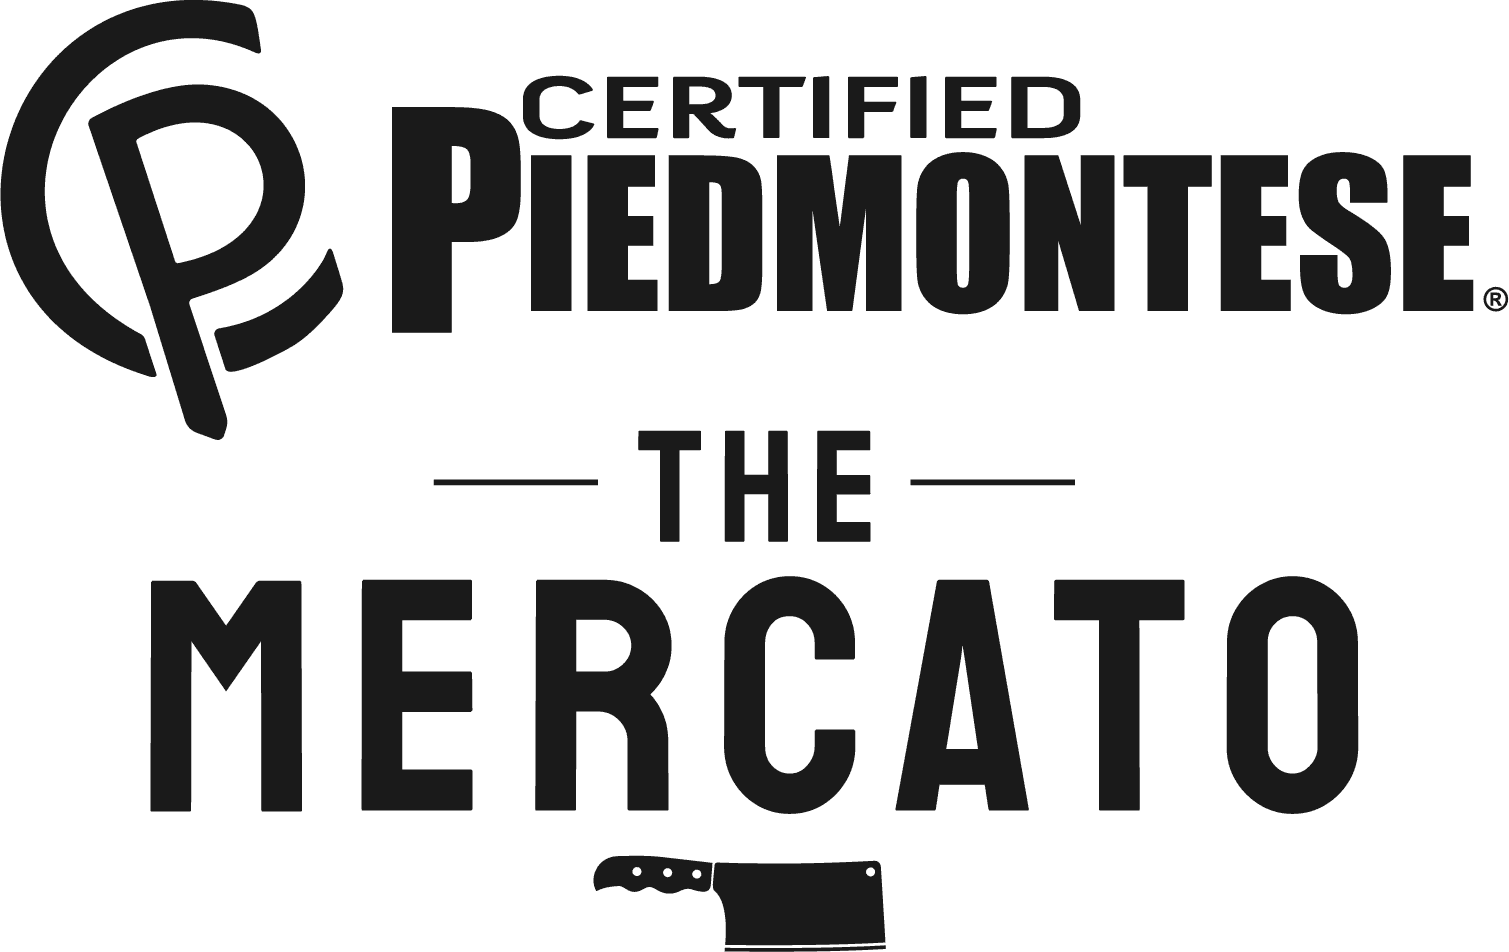 Piedmontese and Mercato